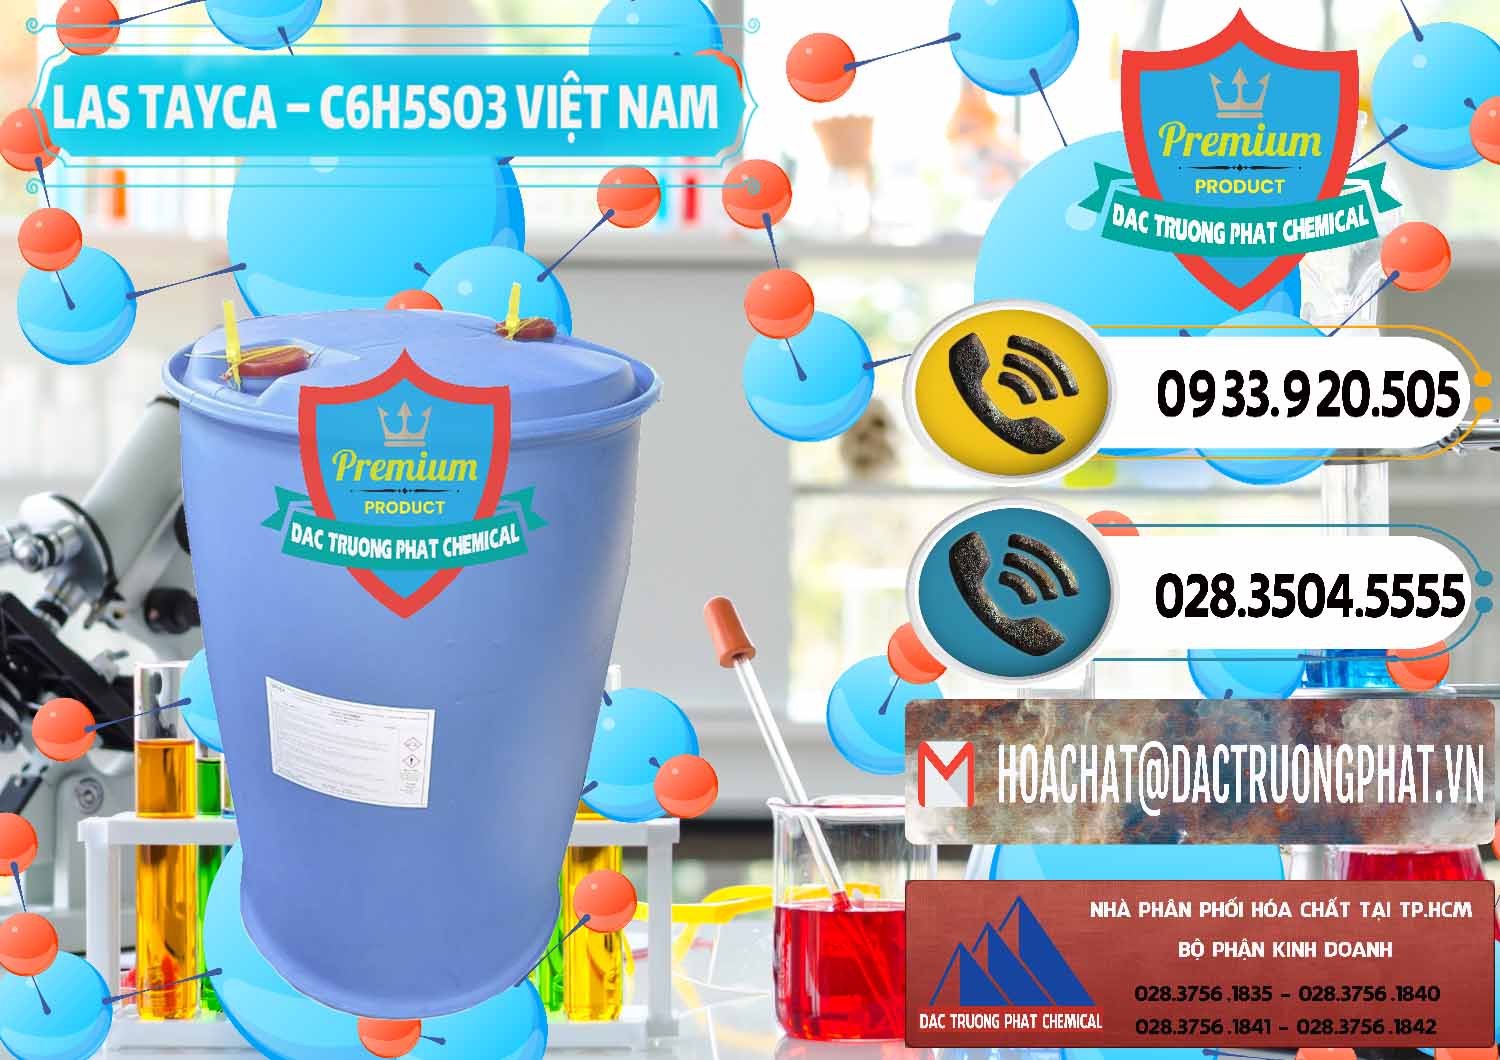 Cty chuyên bán & cung cấp Chất tạo bọt Las Tayca Việt Nam - 0305 - Cty chuyên kinh doanh ( phân phối ) hóa chất tại TP.HCM - hoachatdetnhuom.vn